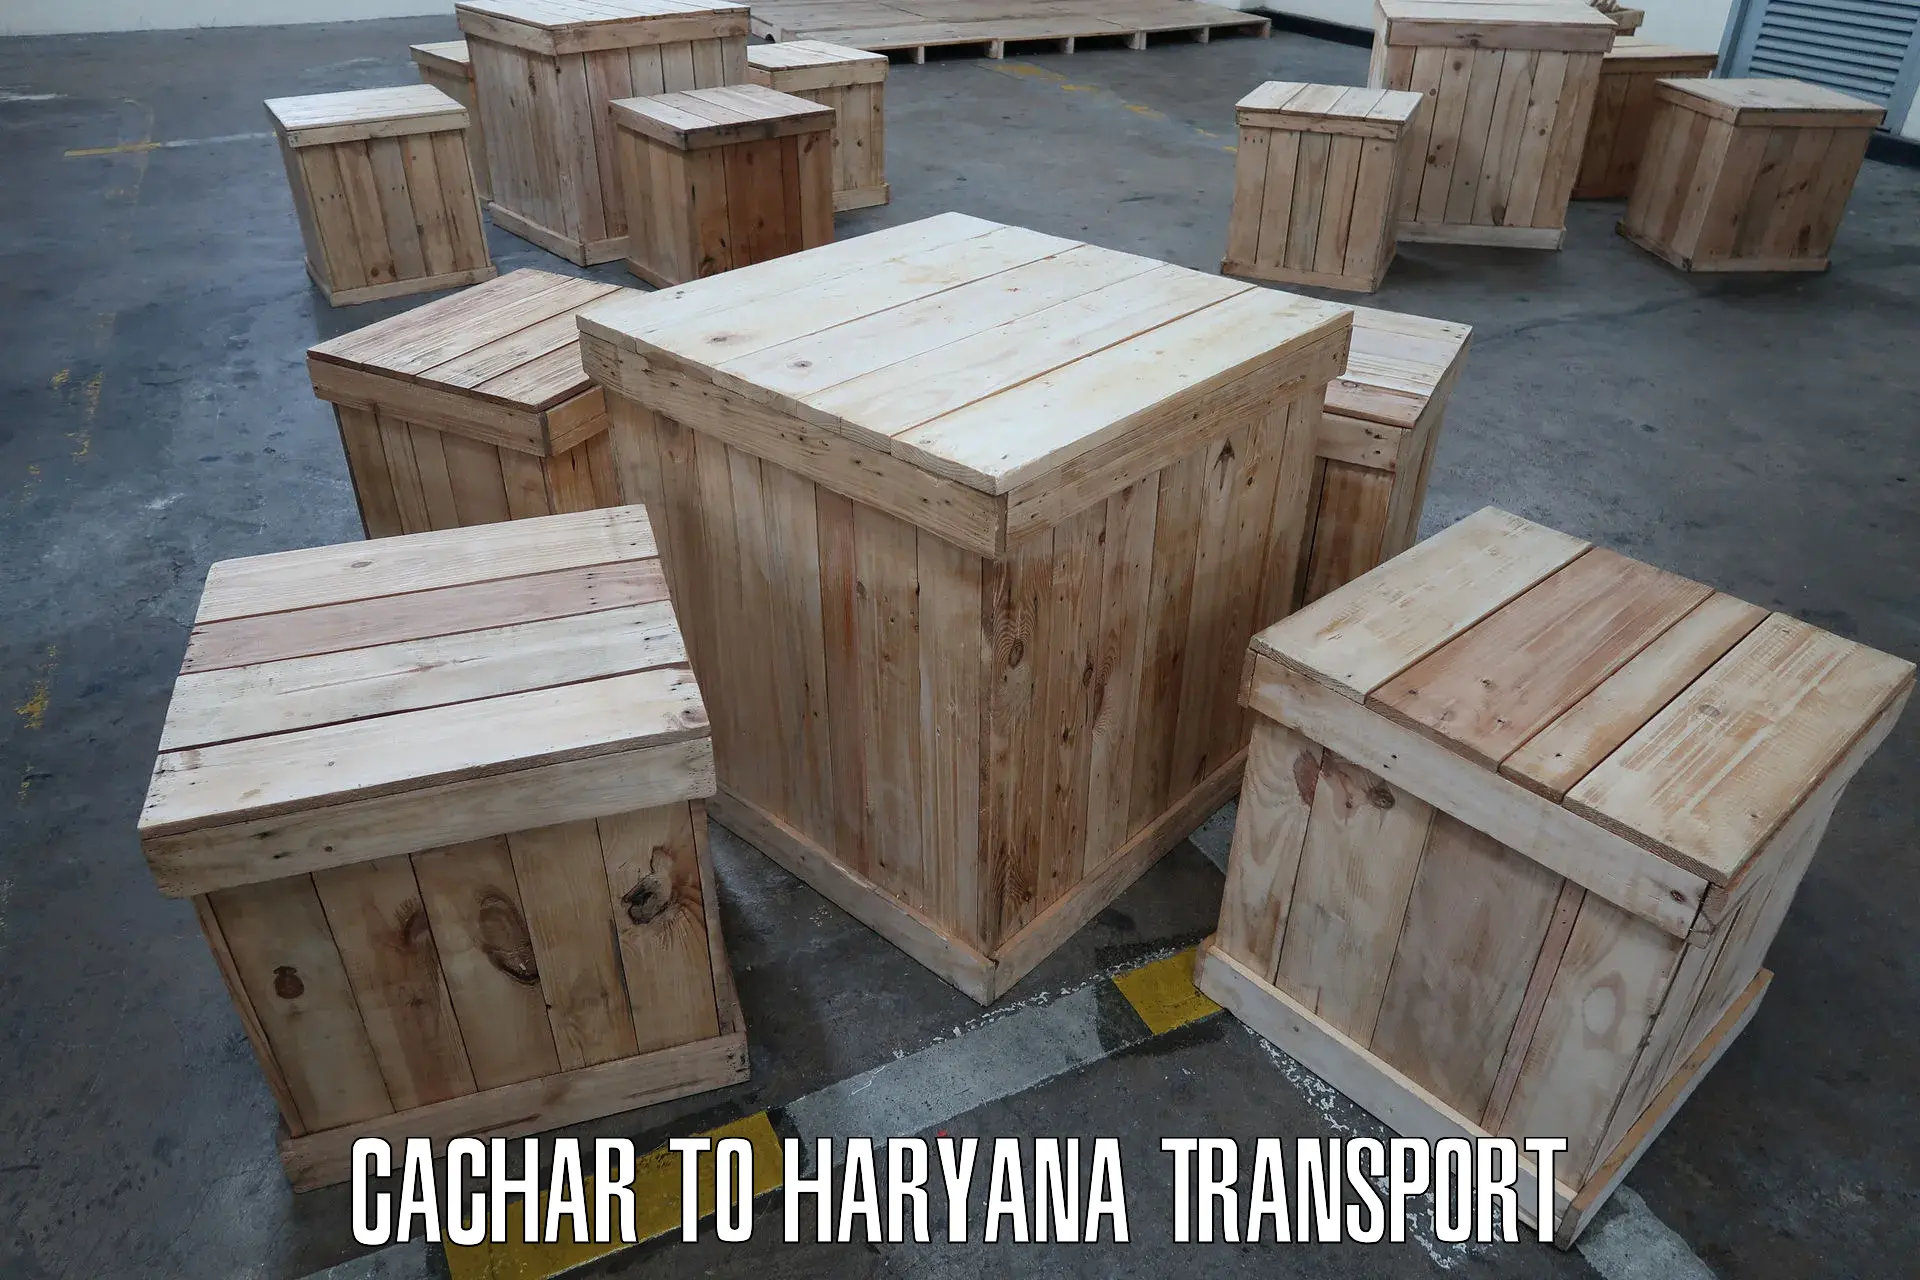 Bike shipping service Cachar to Hisar